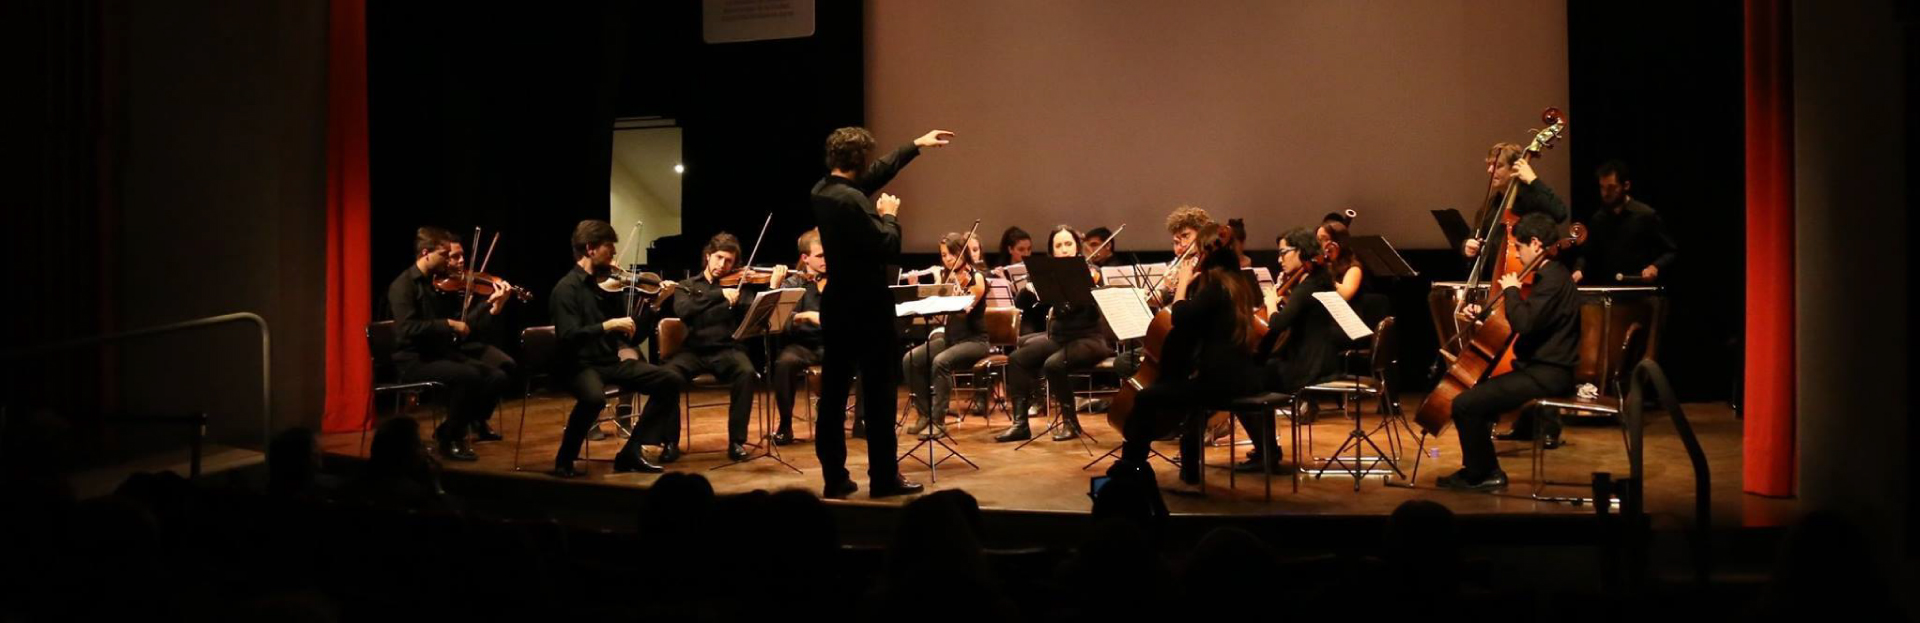 Aires Románticos - Orquesta Académica Carlos López Buchardo